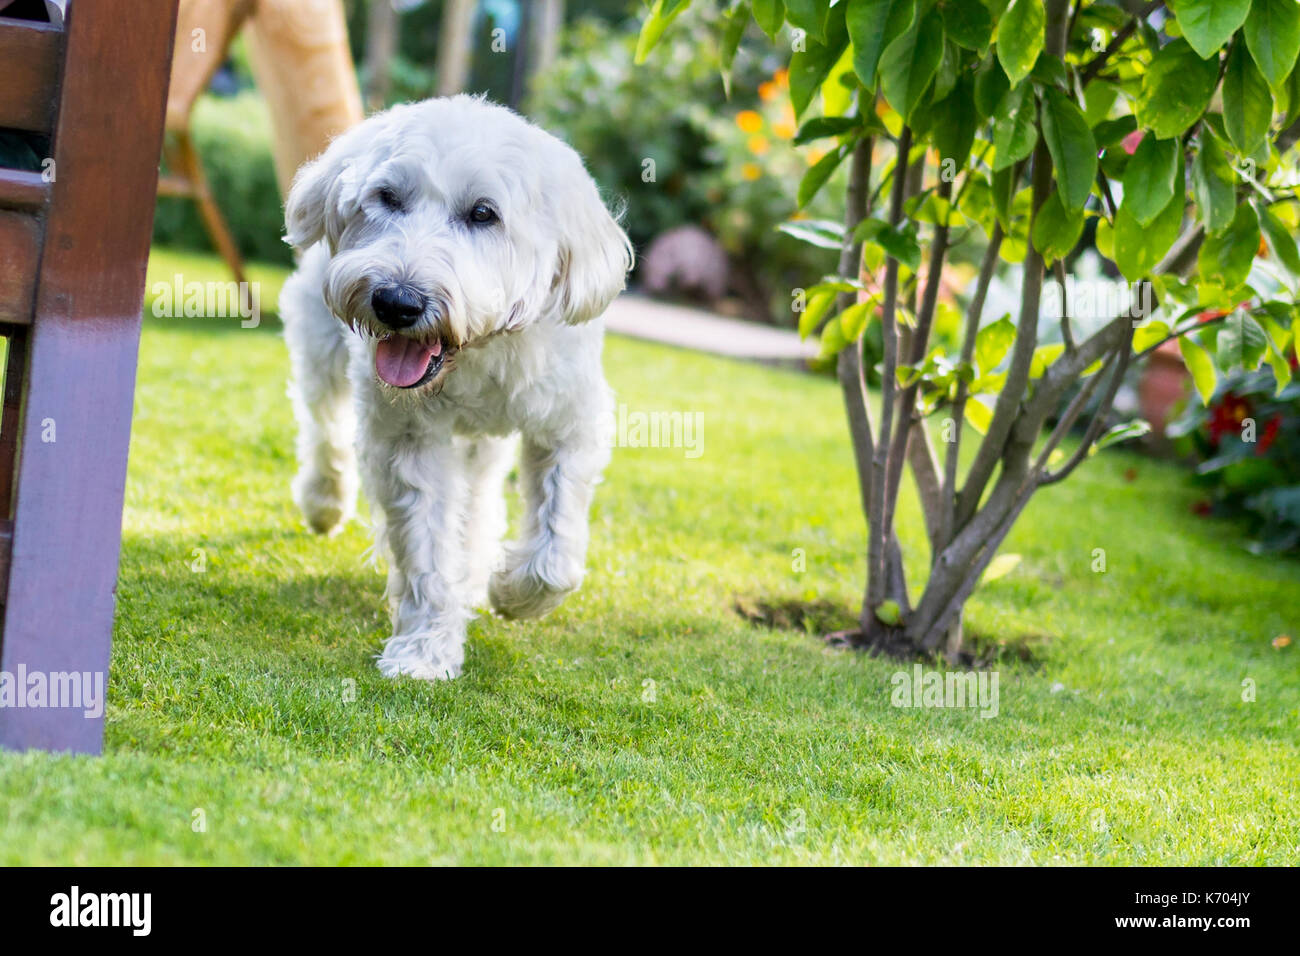 Belle et ludique aux cheveux blanc Terrier Wheaten exécute joyeusement autour du jardin au Royaume-Uni Banque D'Images